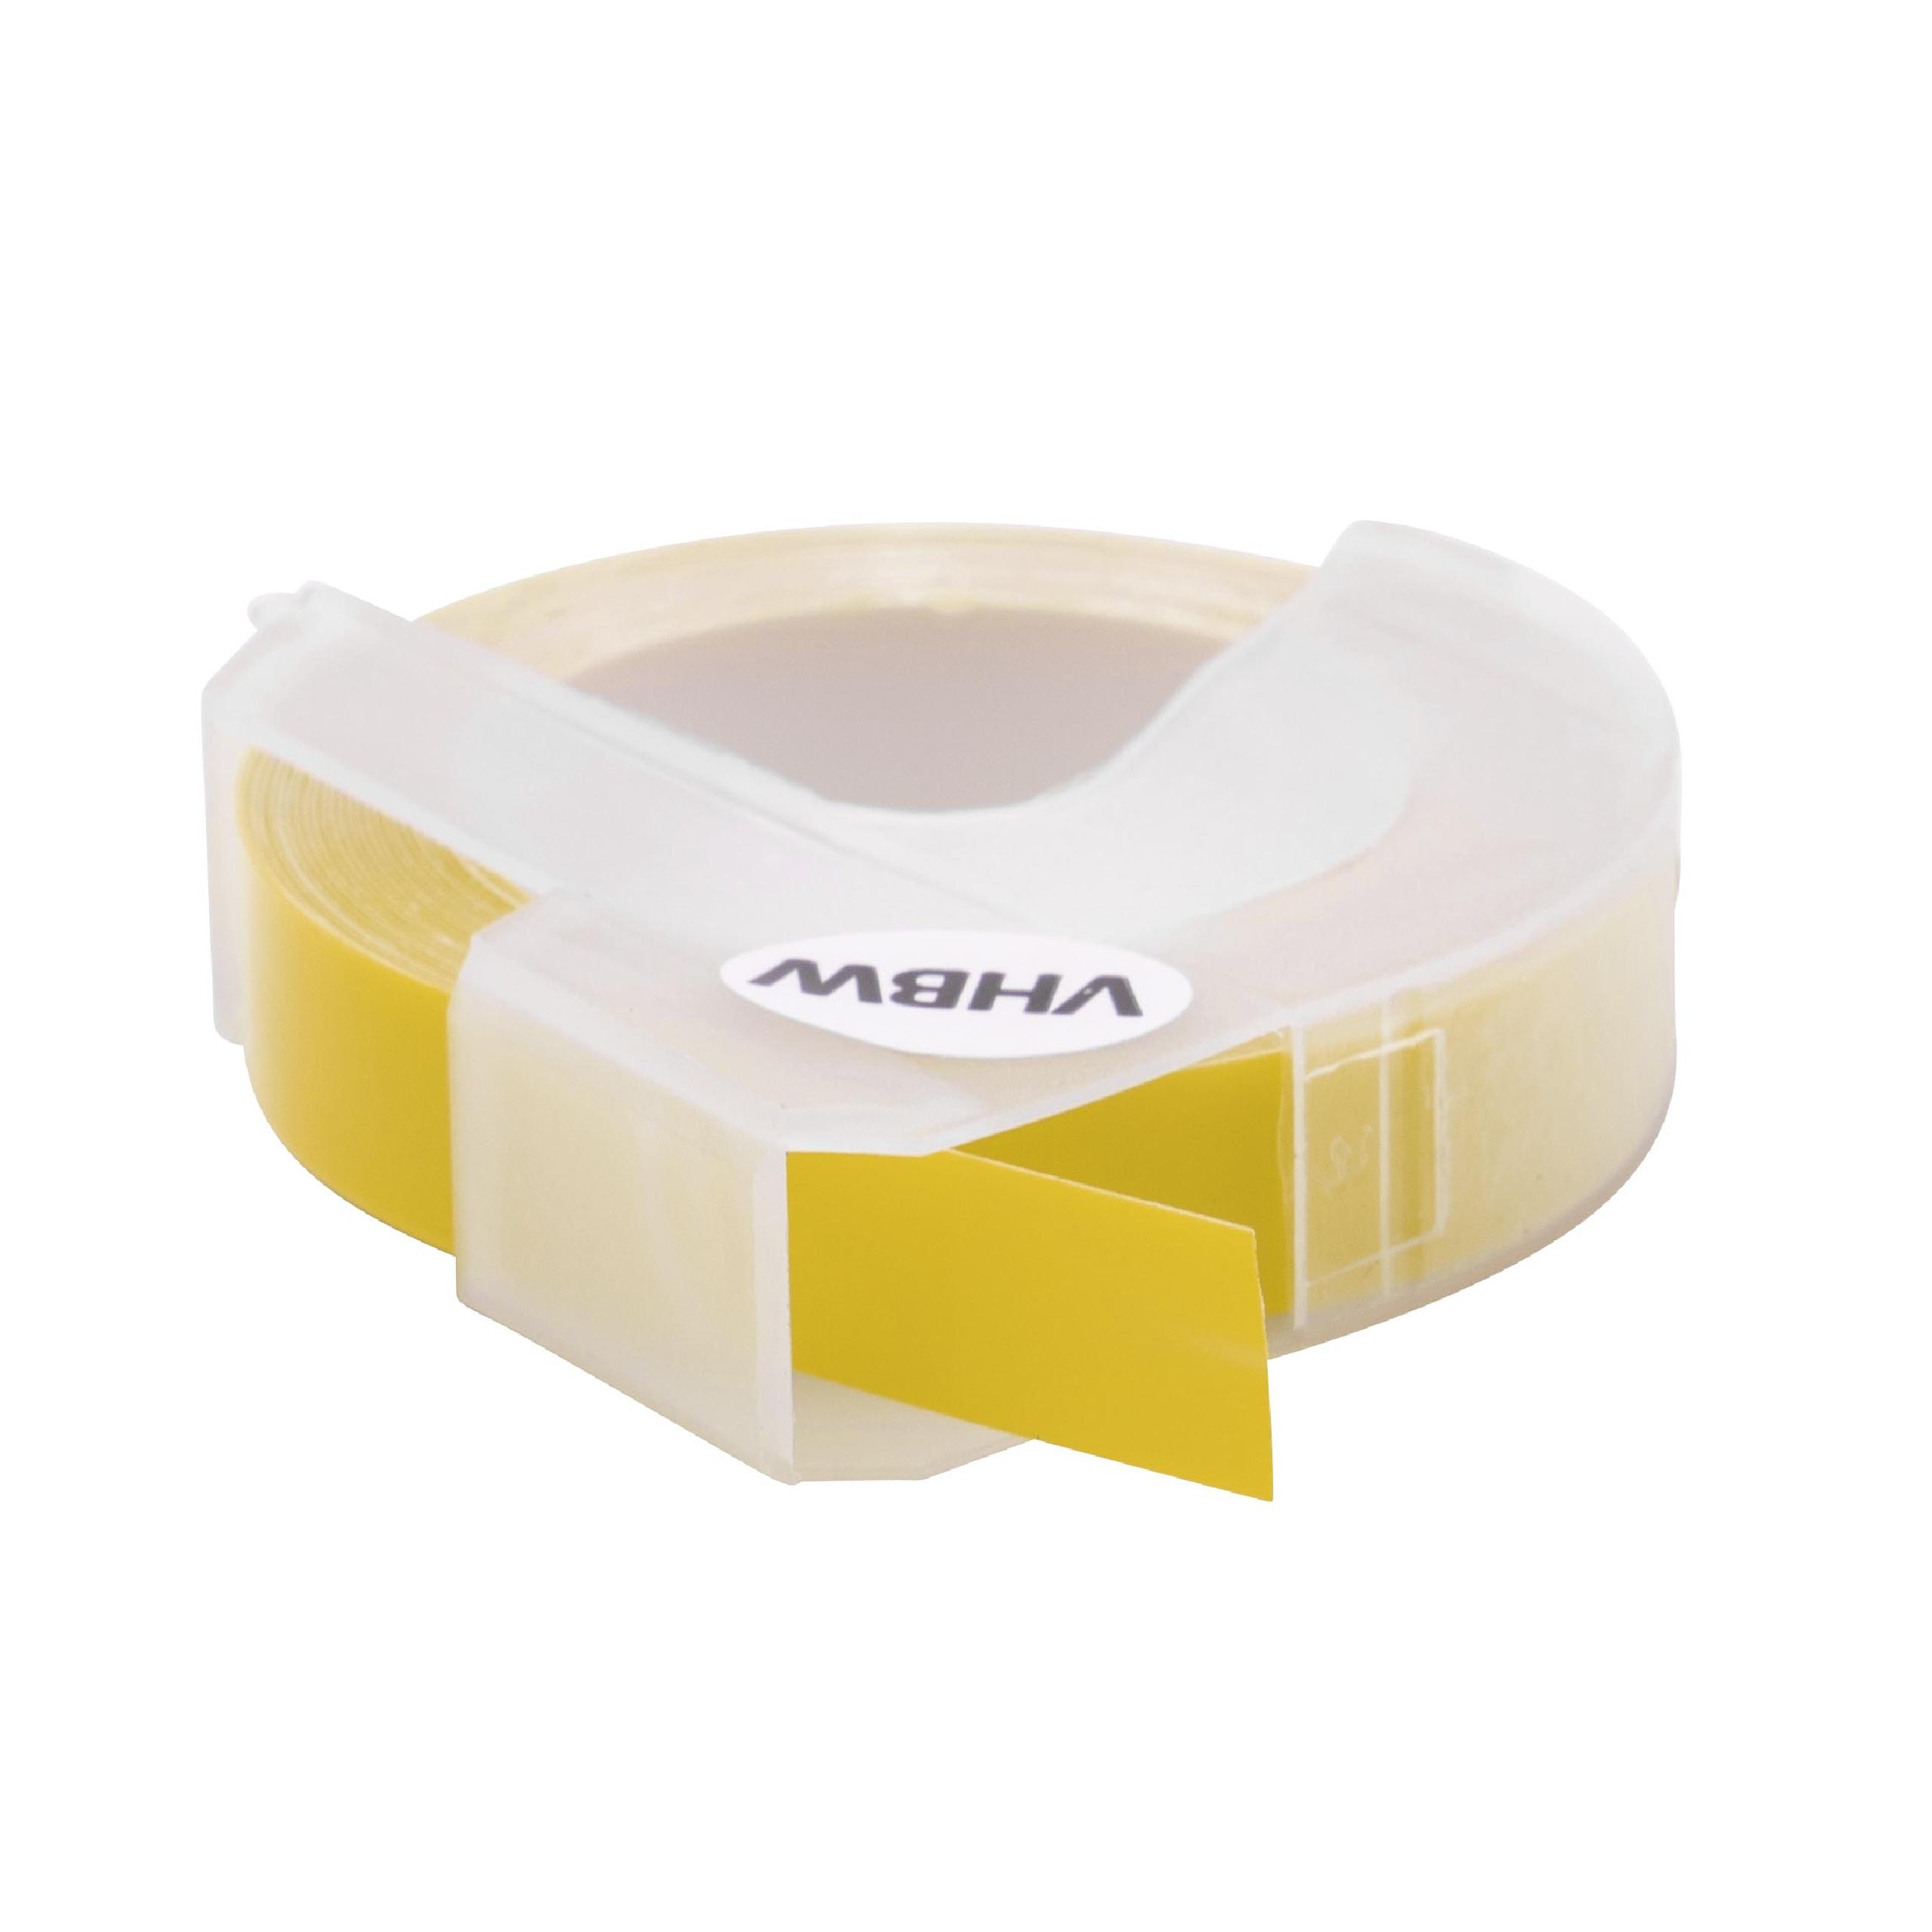 Casete cinta relieve 3D Casete cinta escritura reemplaza Dymo S0898160, 520108 Blanco su Amarillo